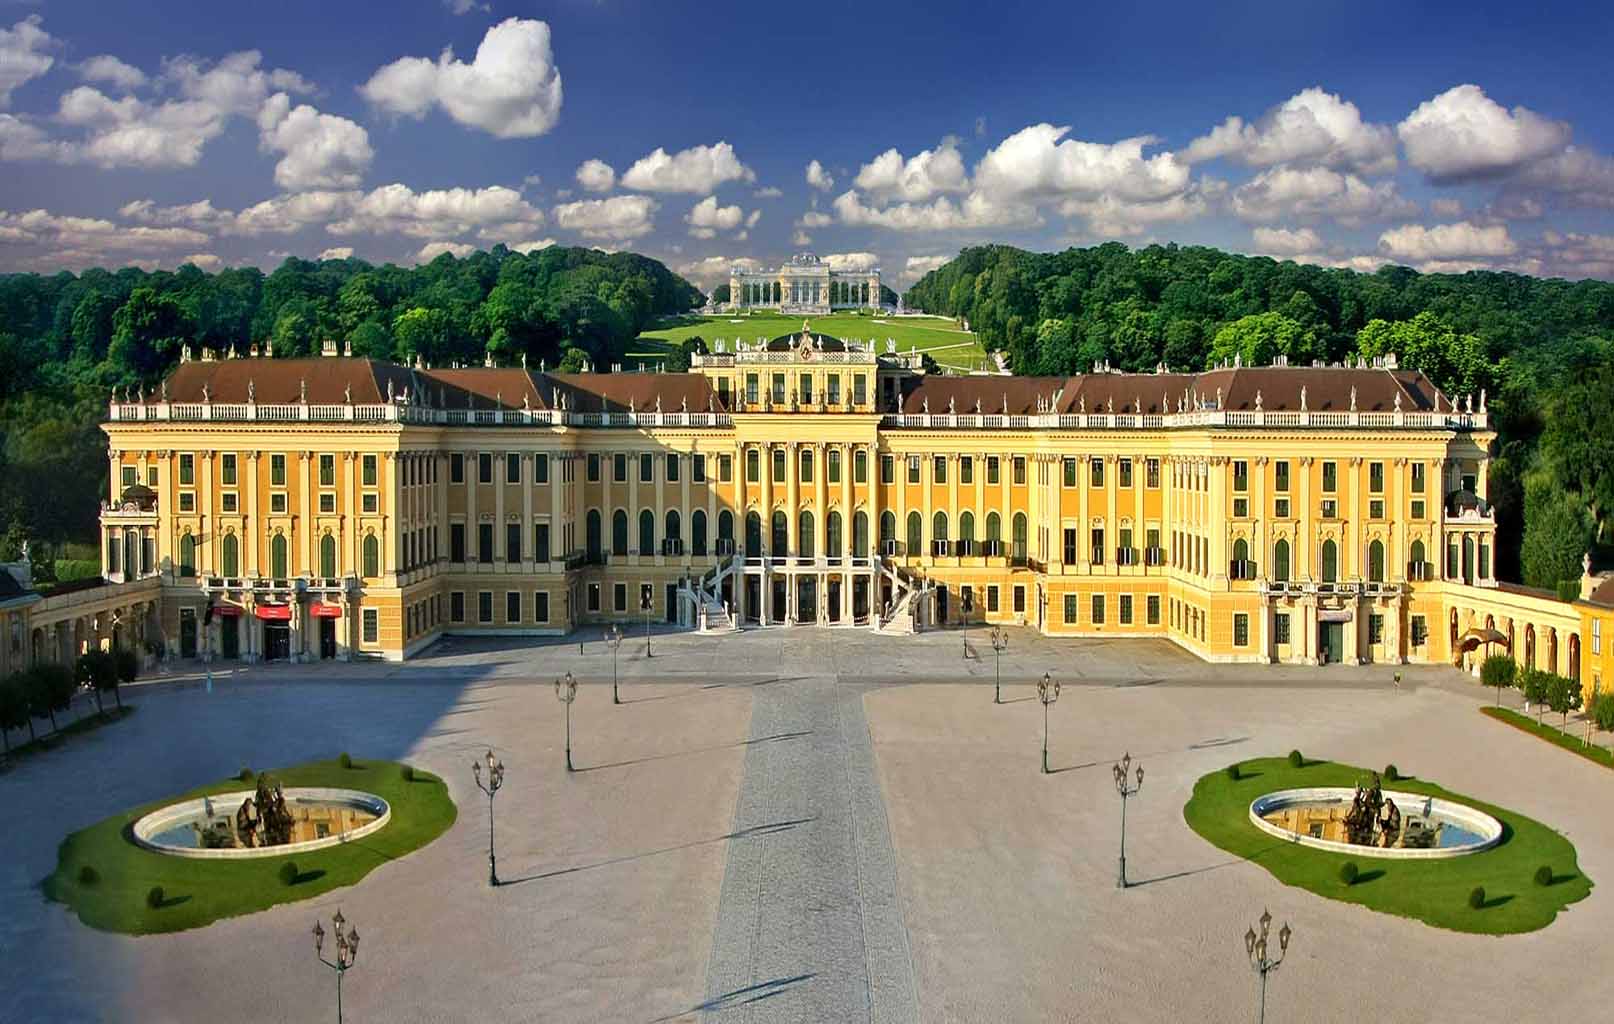 Cung điện Schonbrunn Palace